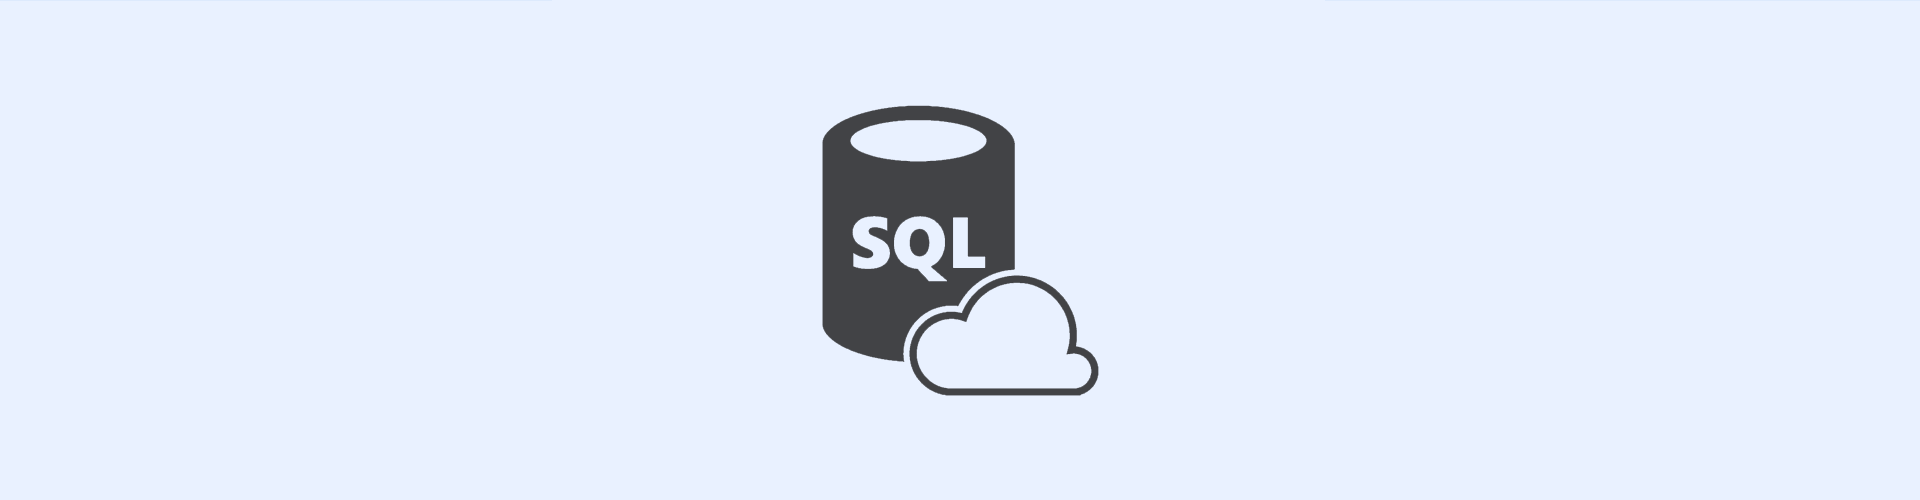 Hostarex blog: SQL nədir?